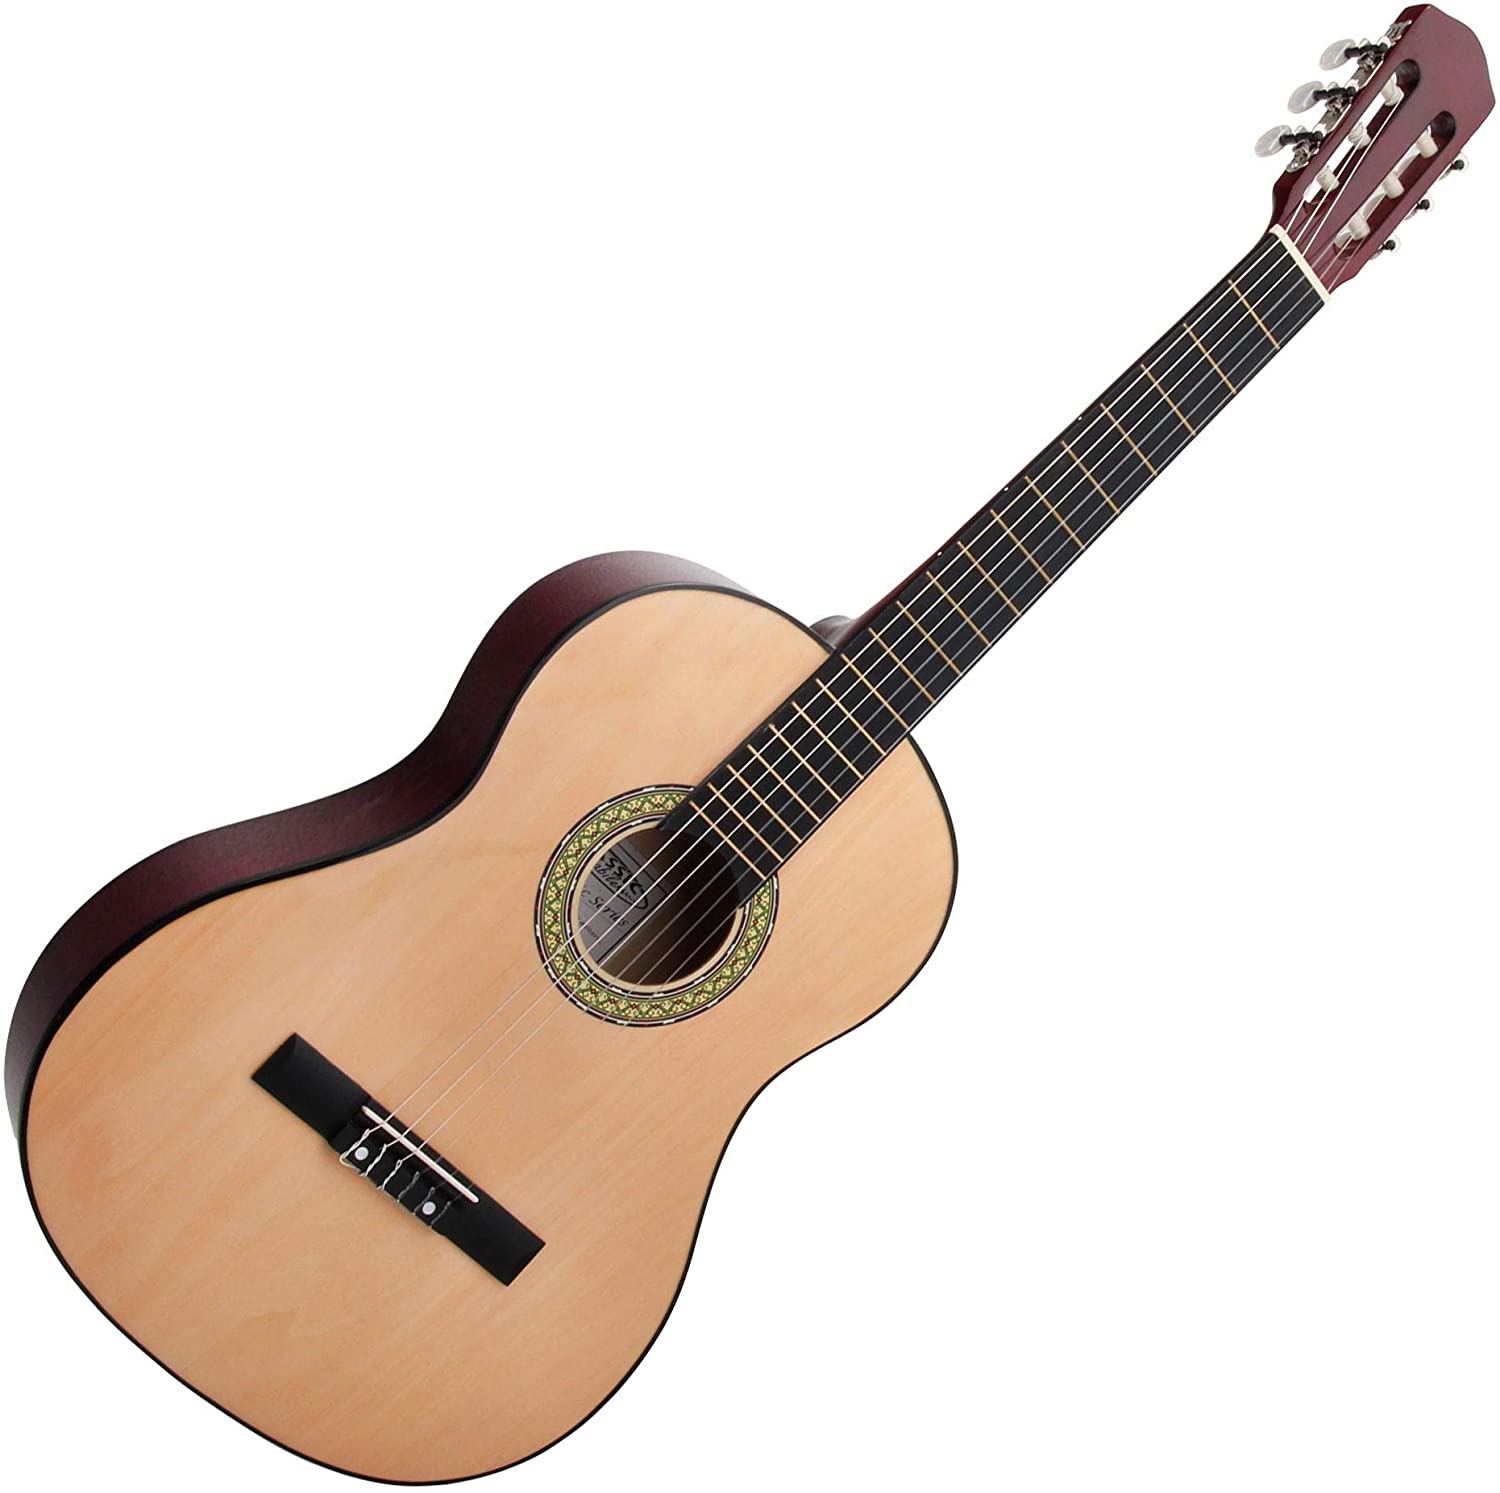 Cantábile guitarra española